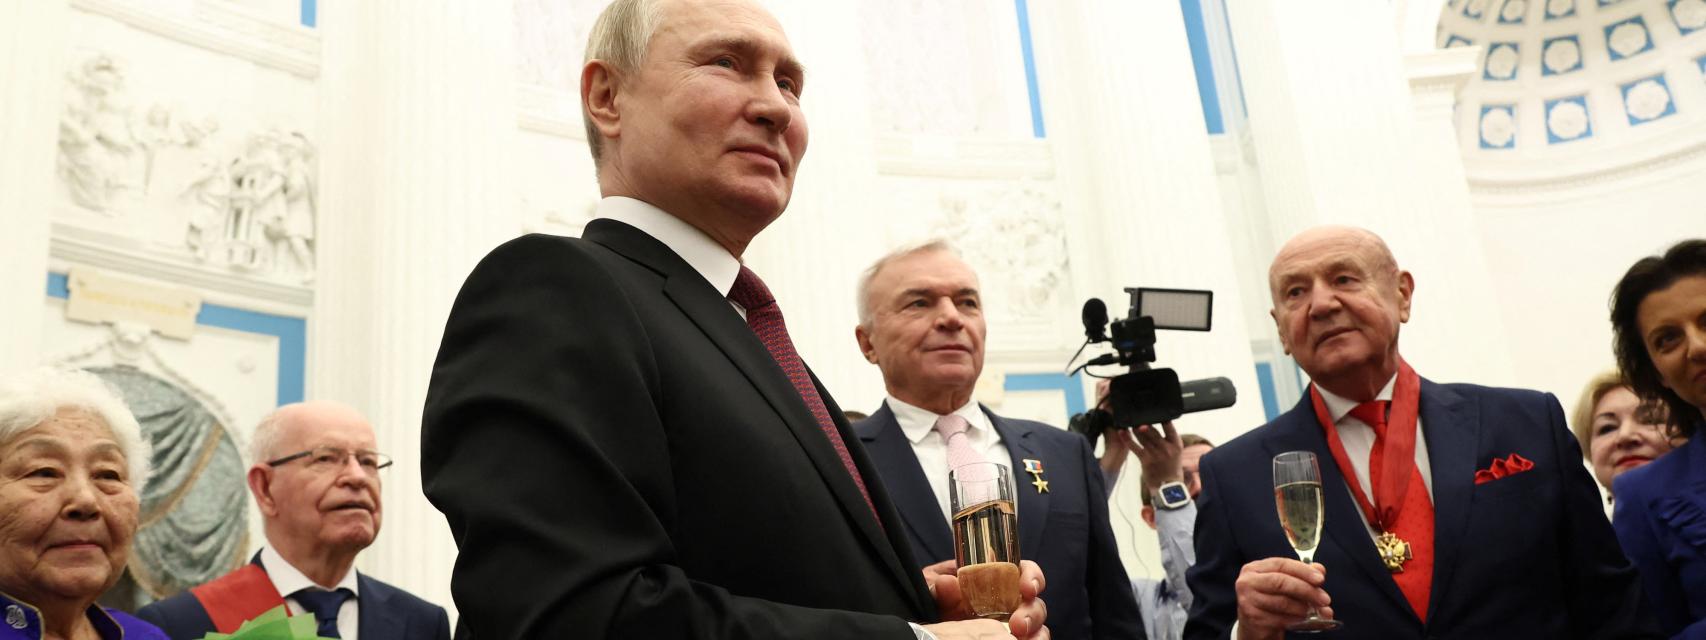 Vladímir Putin brinda con los homenajeados en unos premios de los premios concedidos por el Kremlin.